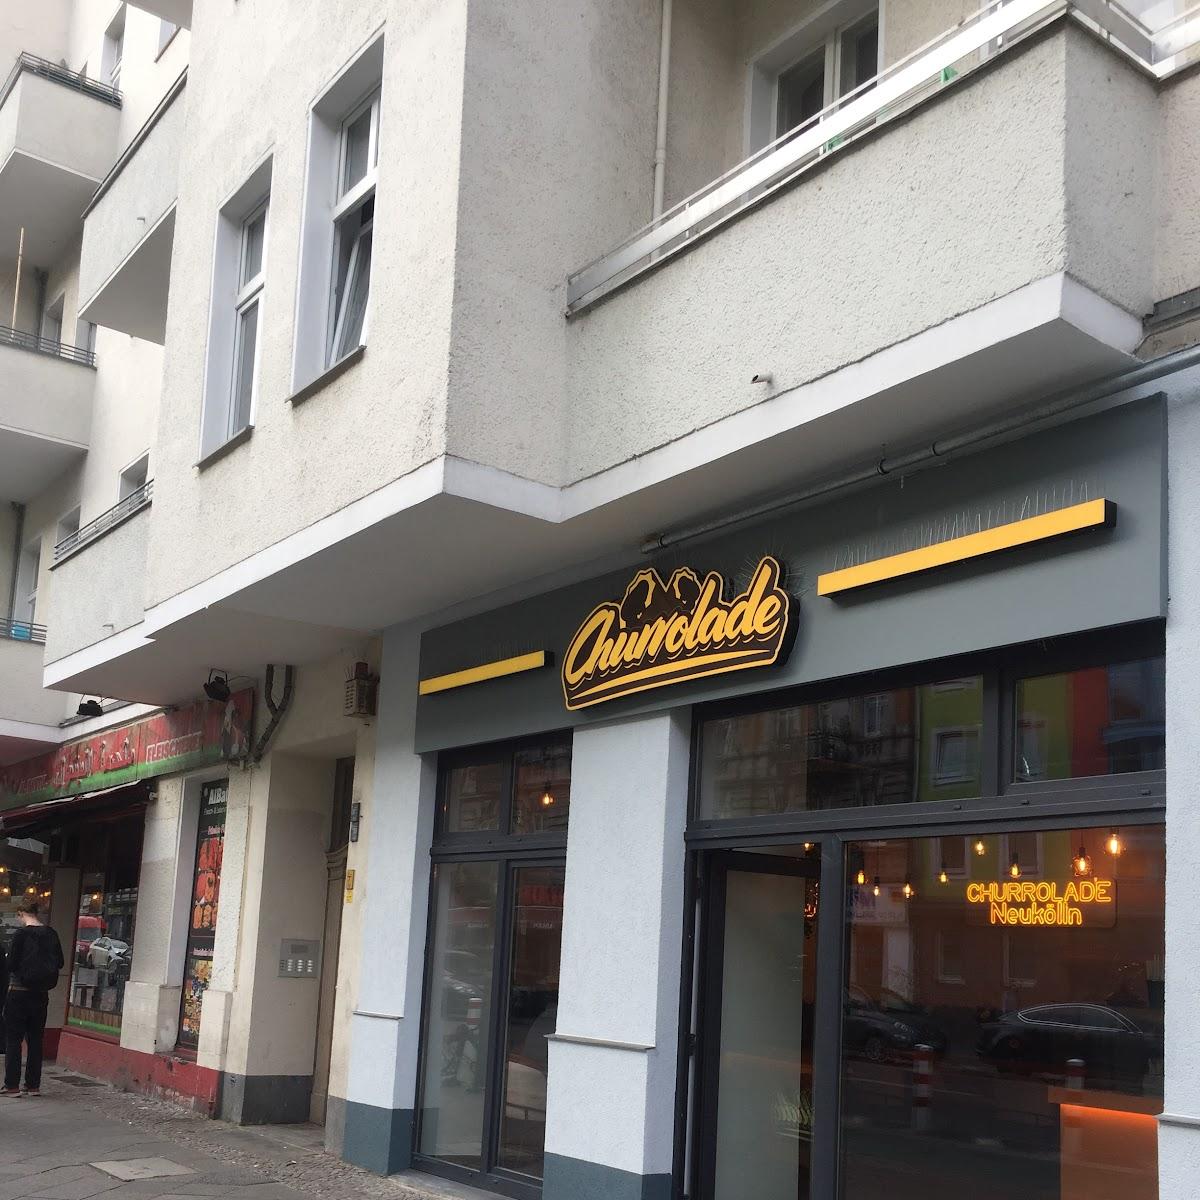 Restaurant "Churrolade Neukölln" in Berlin